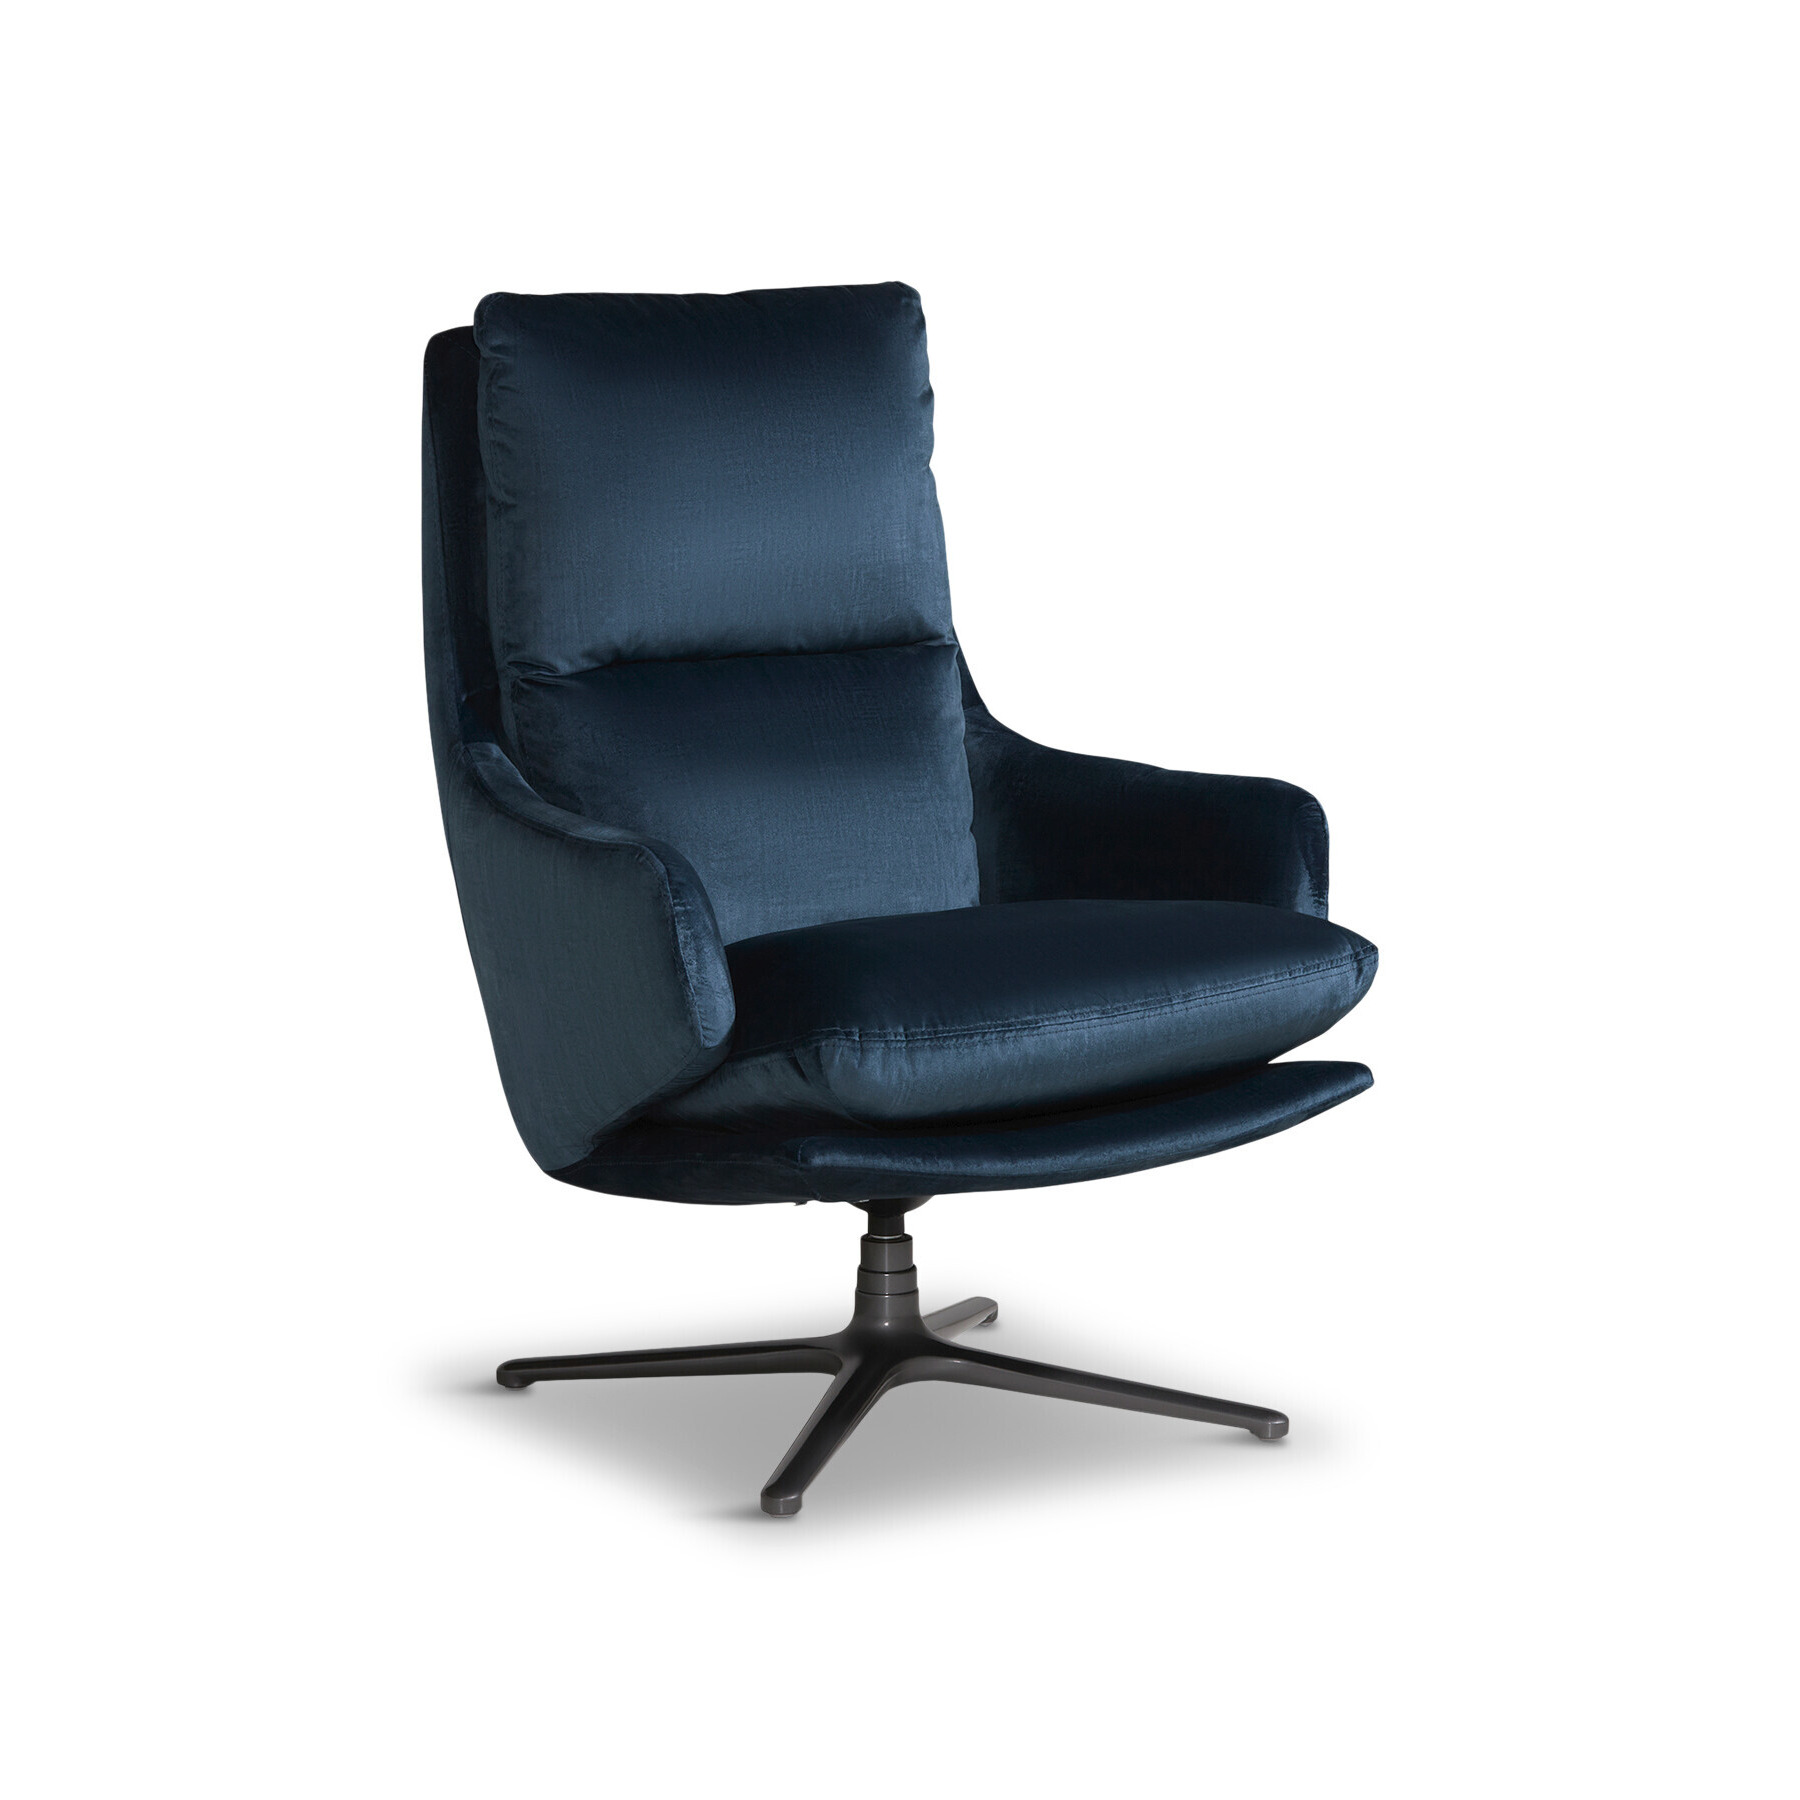 Barker and Stonehouse Marcel Velvet Swivel Chair, Blue Teal - image 1